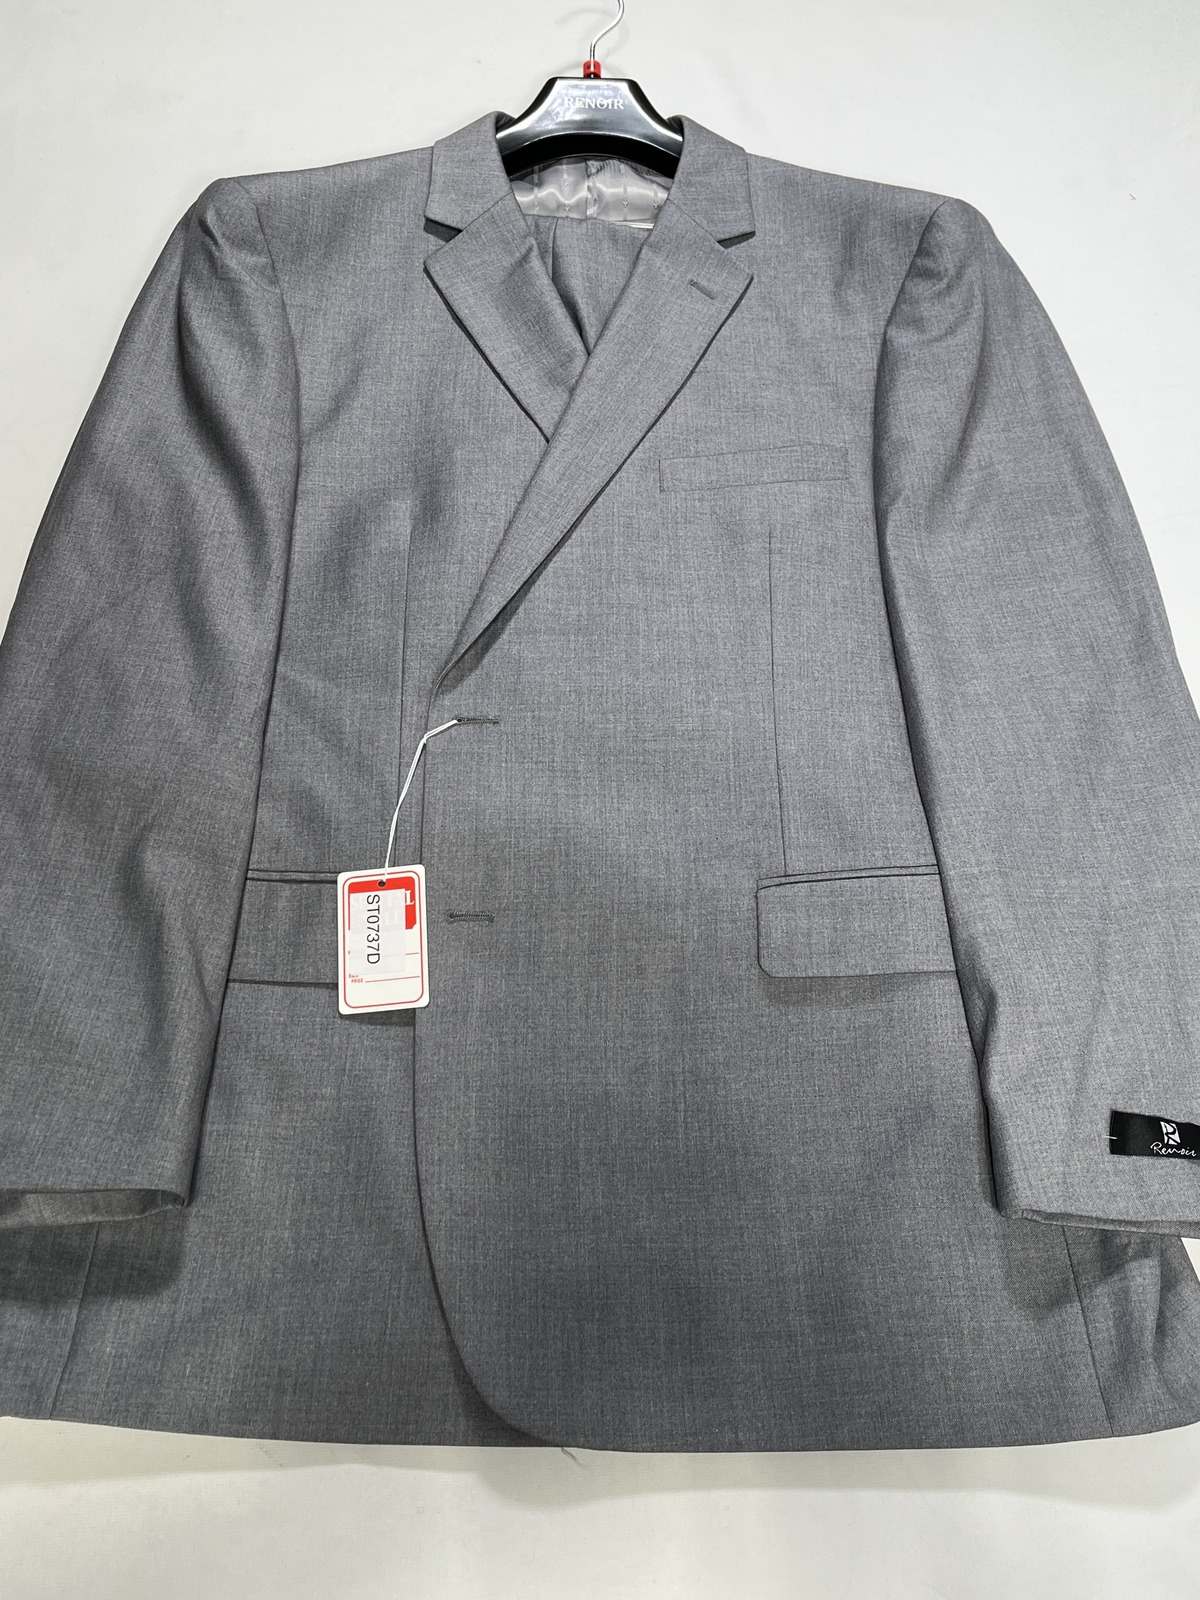 Men Renoir Gray 2 Piece Suit Size 50L 44W NEW